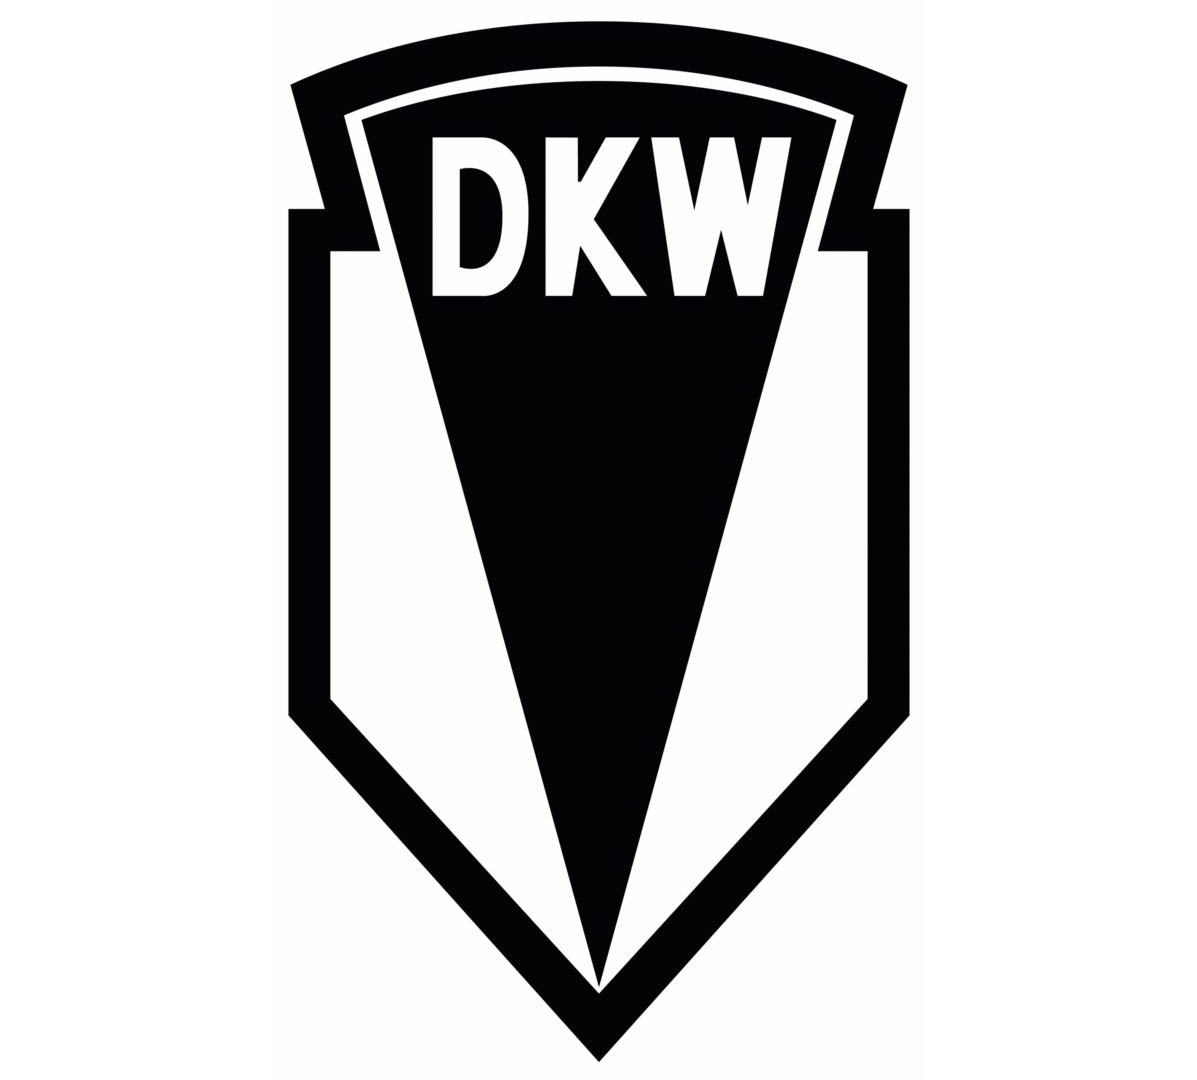 DKW motorcycle logo